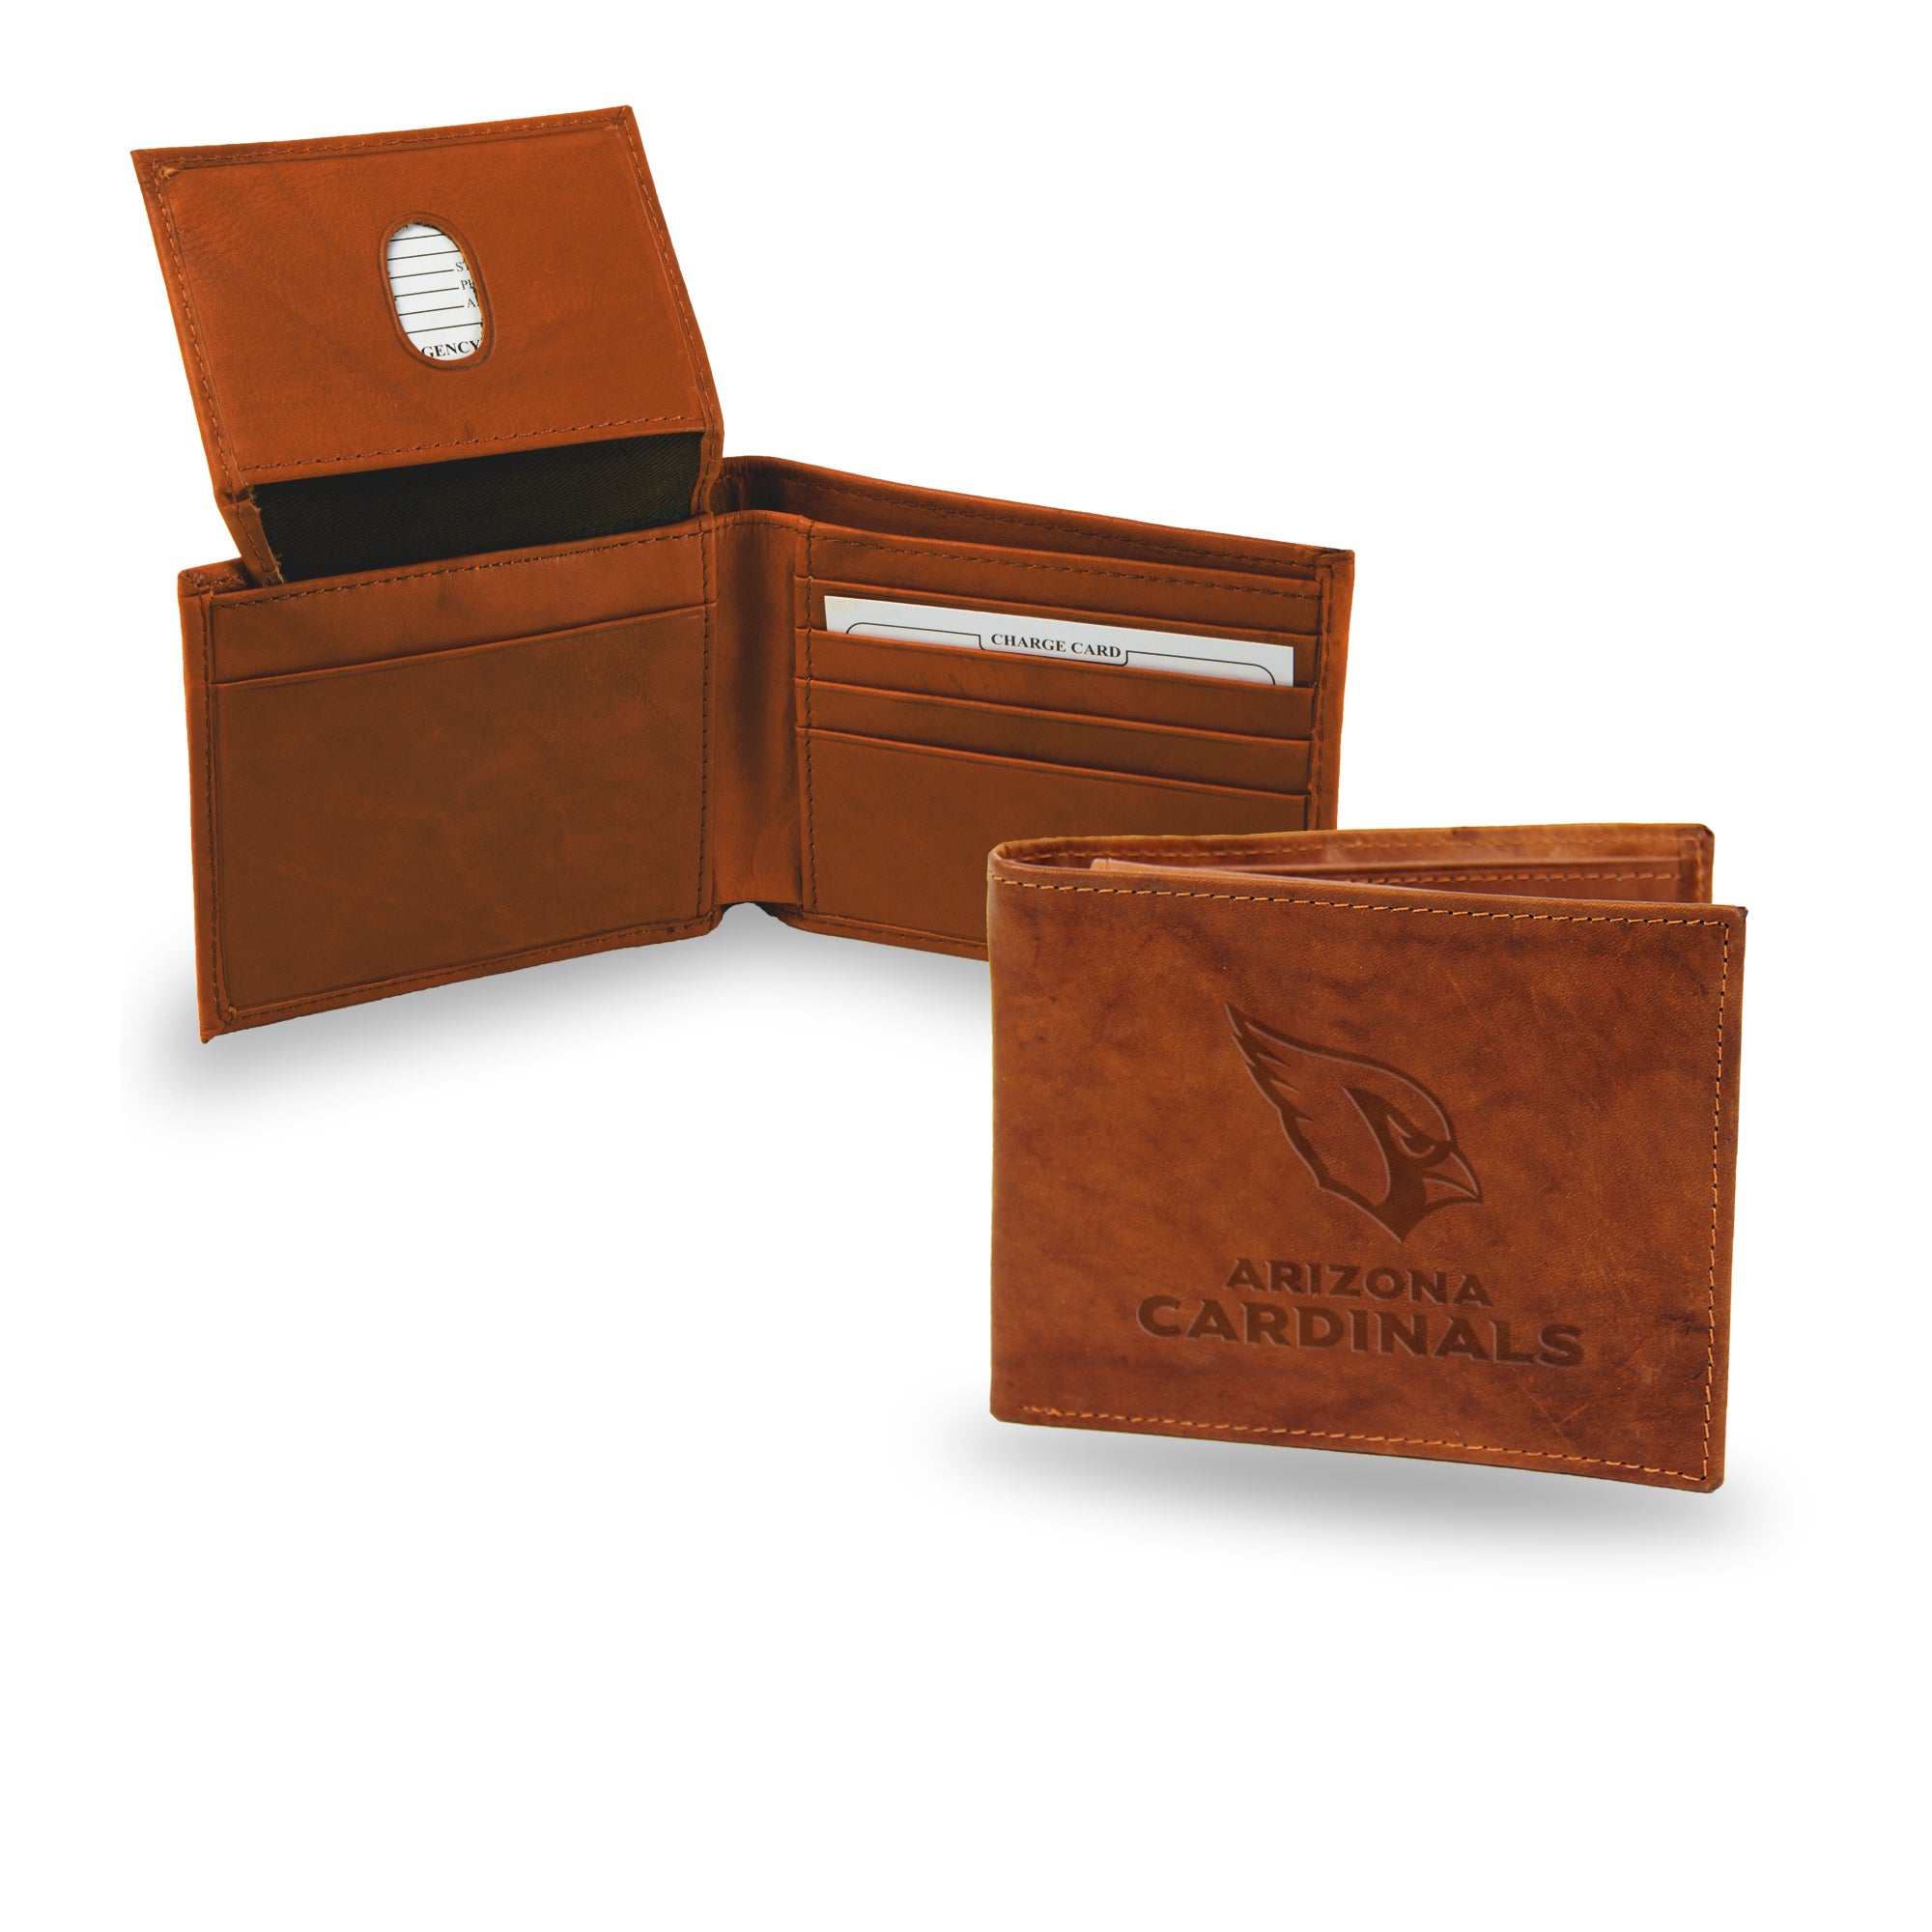 Arizona Cardinals Genuine Leather Embossed Pecan Billfold Wallet